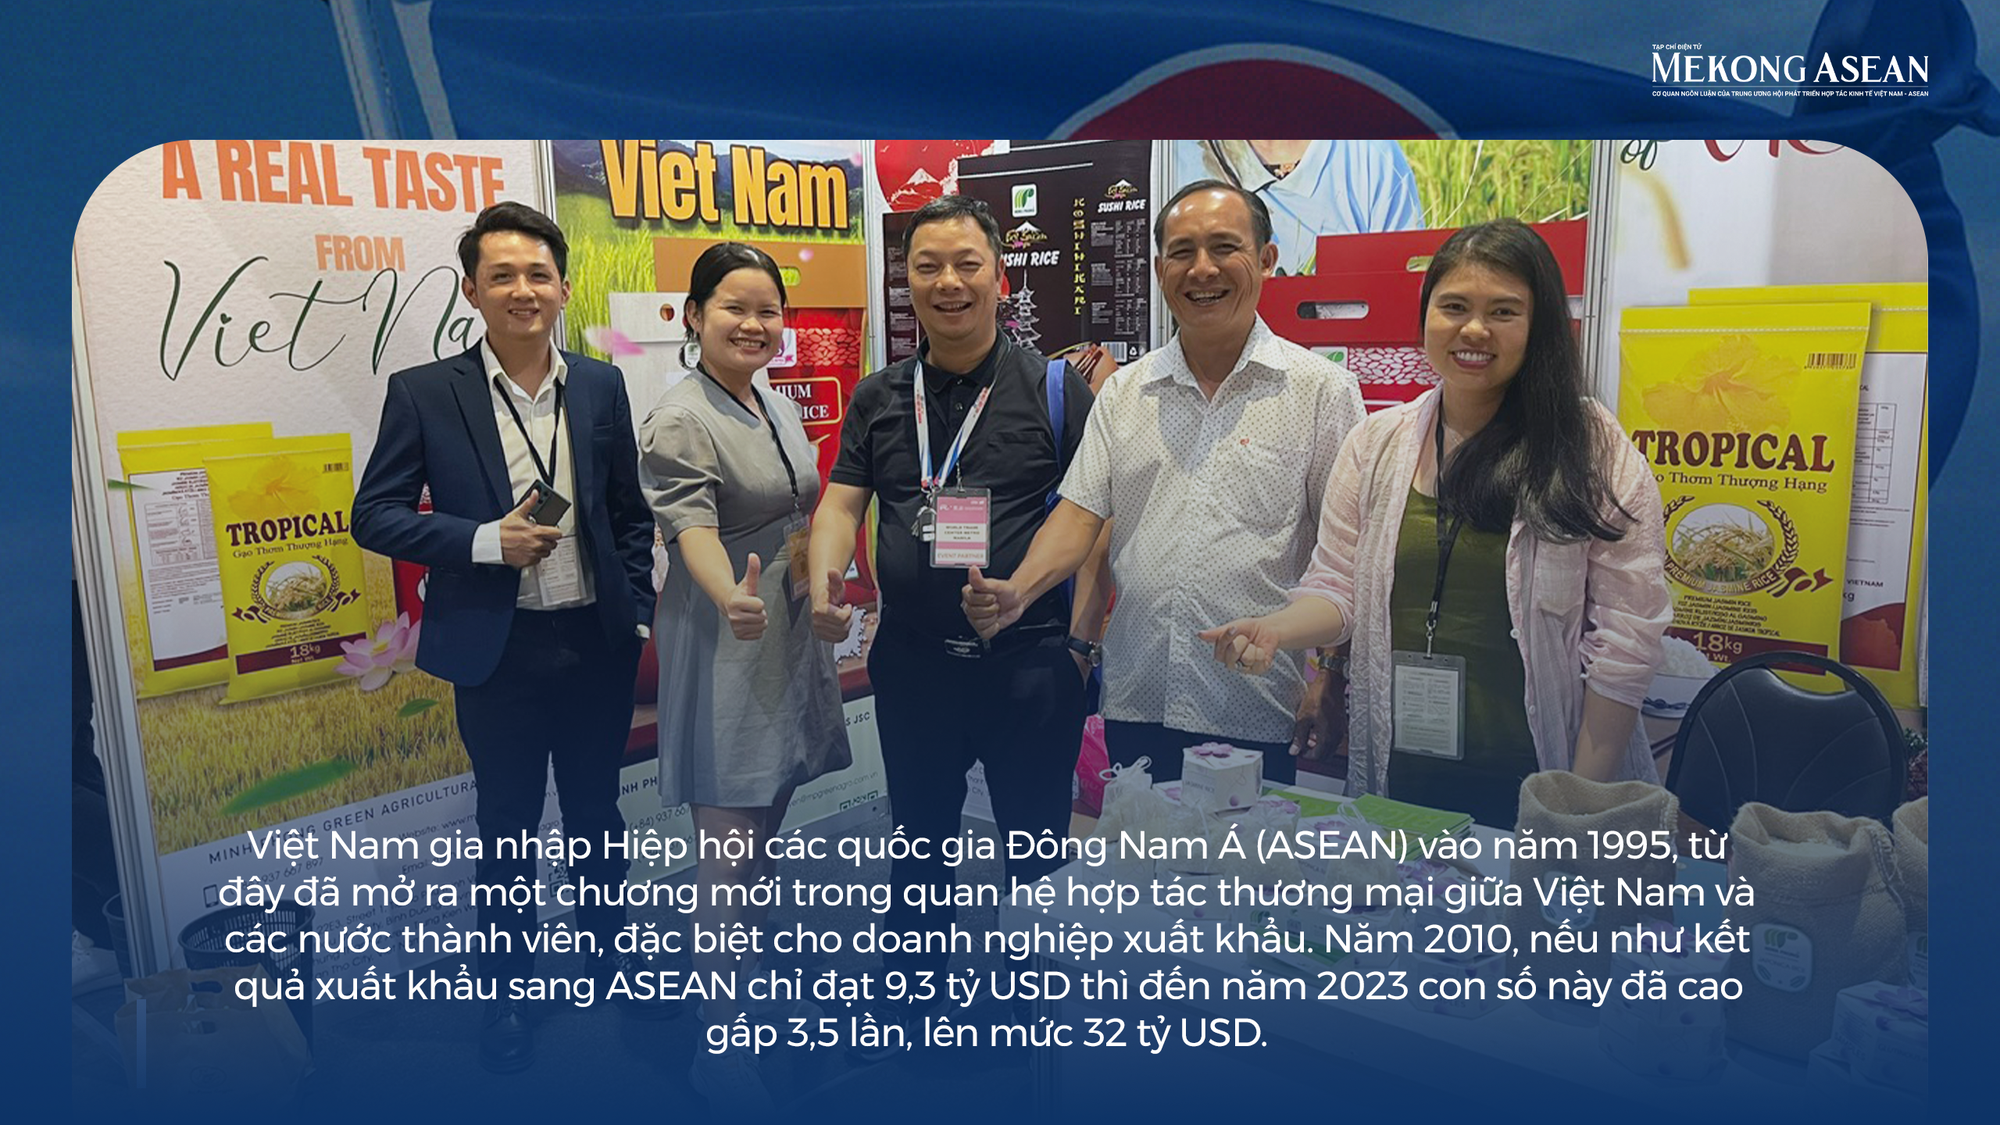 Đa dạng hóa để doanh nghiệp Việt 'lấn sâu' vào ASEAN